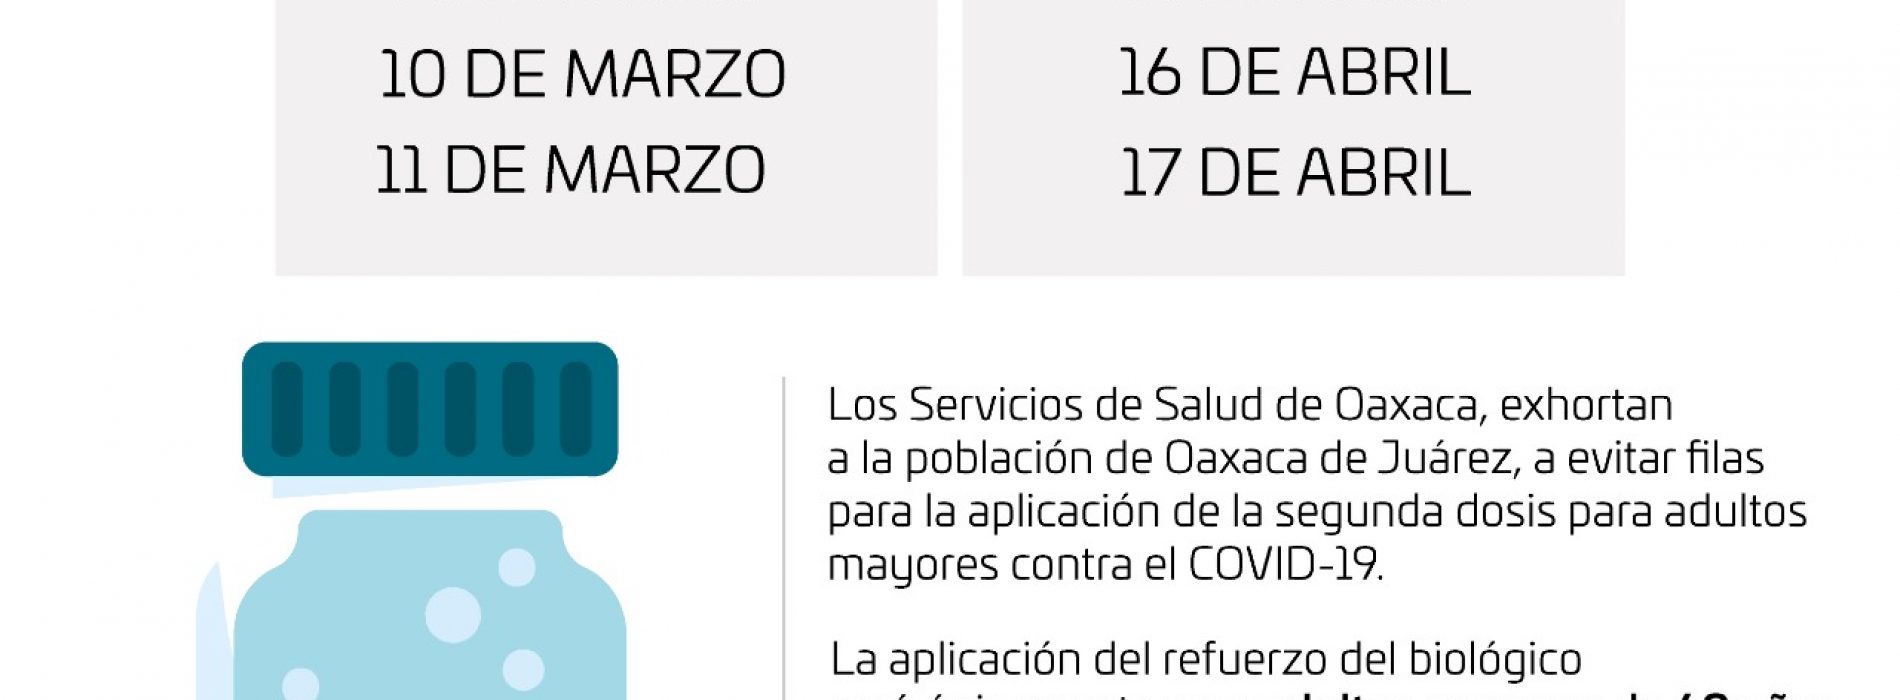 Se aplicará en Oaxaca de Juárez segunda dosis contra COVID-19 los días 15, 16 y 17 de abril